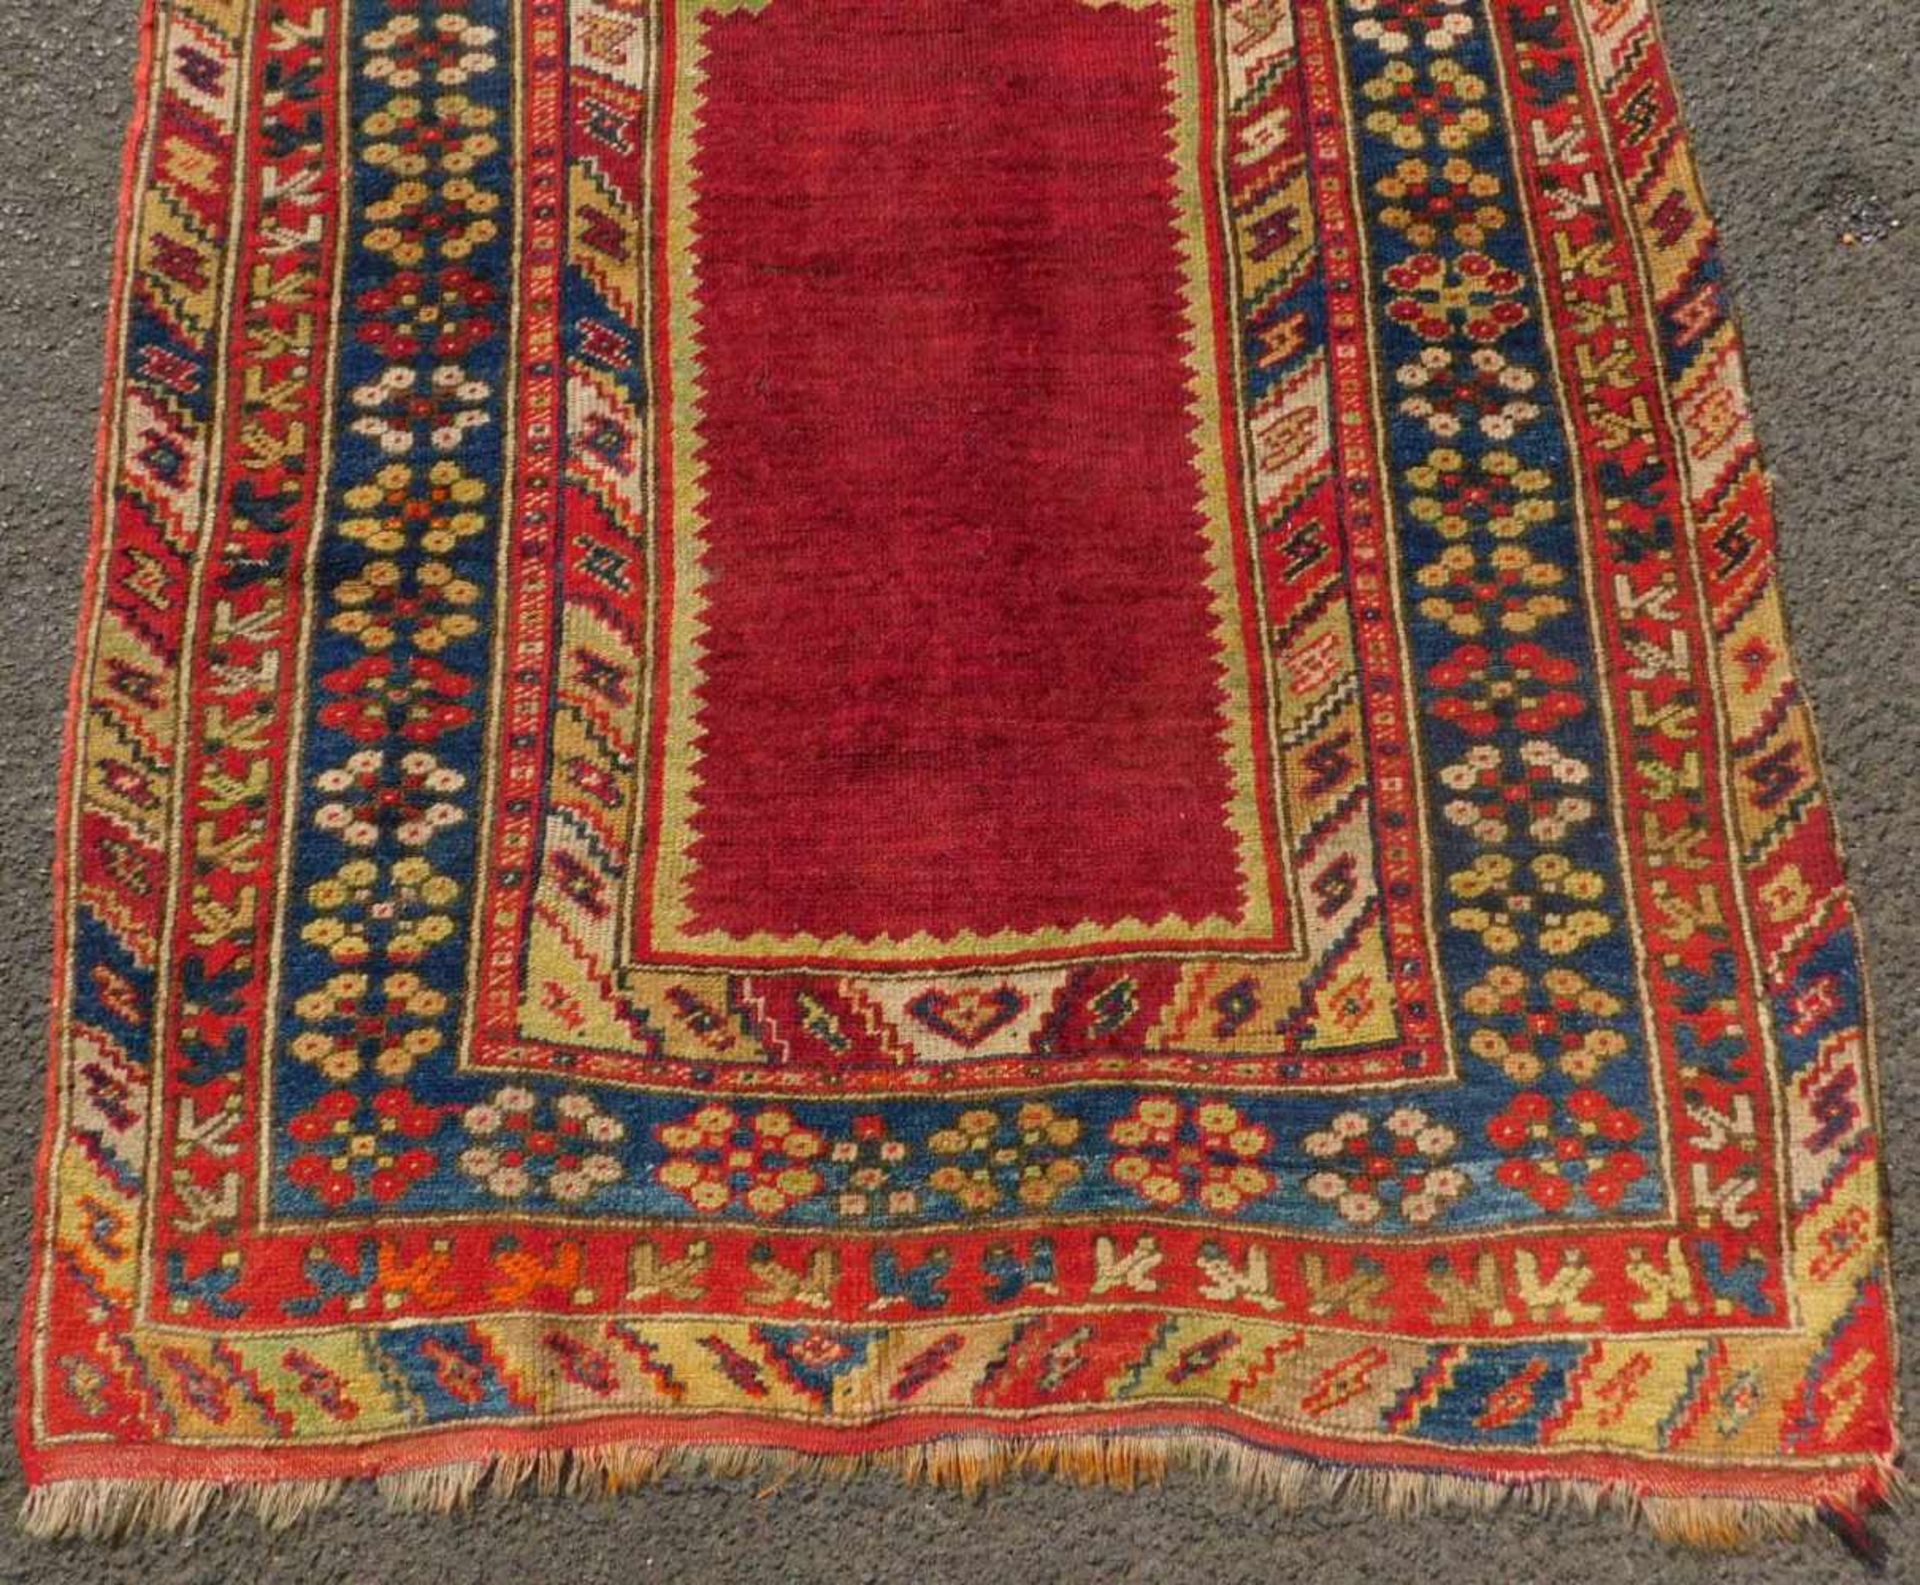 Taspinar Gebetsteppich. Zentral Anatolien. Türkei. Antik, um 1900.171 cm x 103 cm. Handgeknüpft. - Image 2 of 6